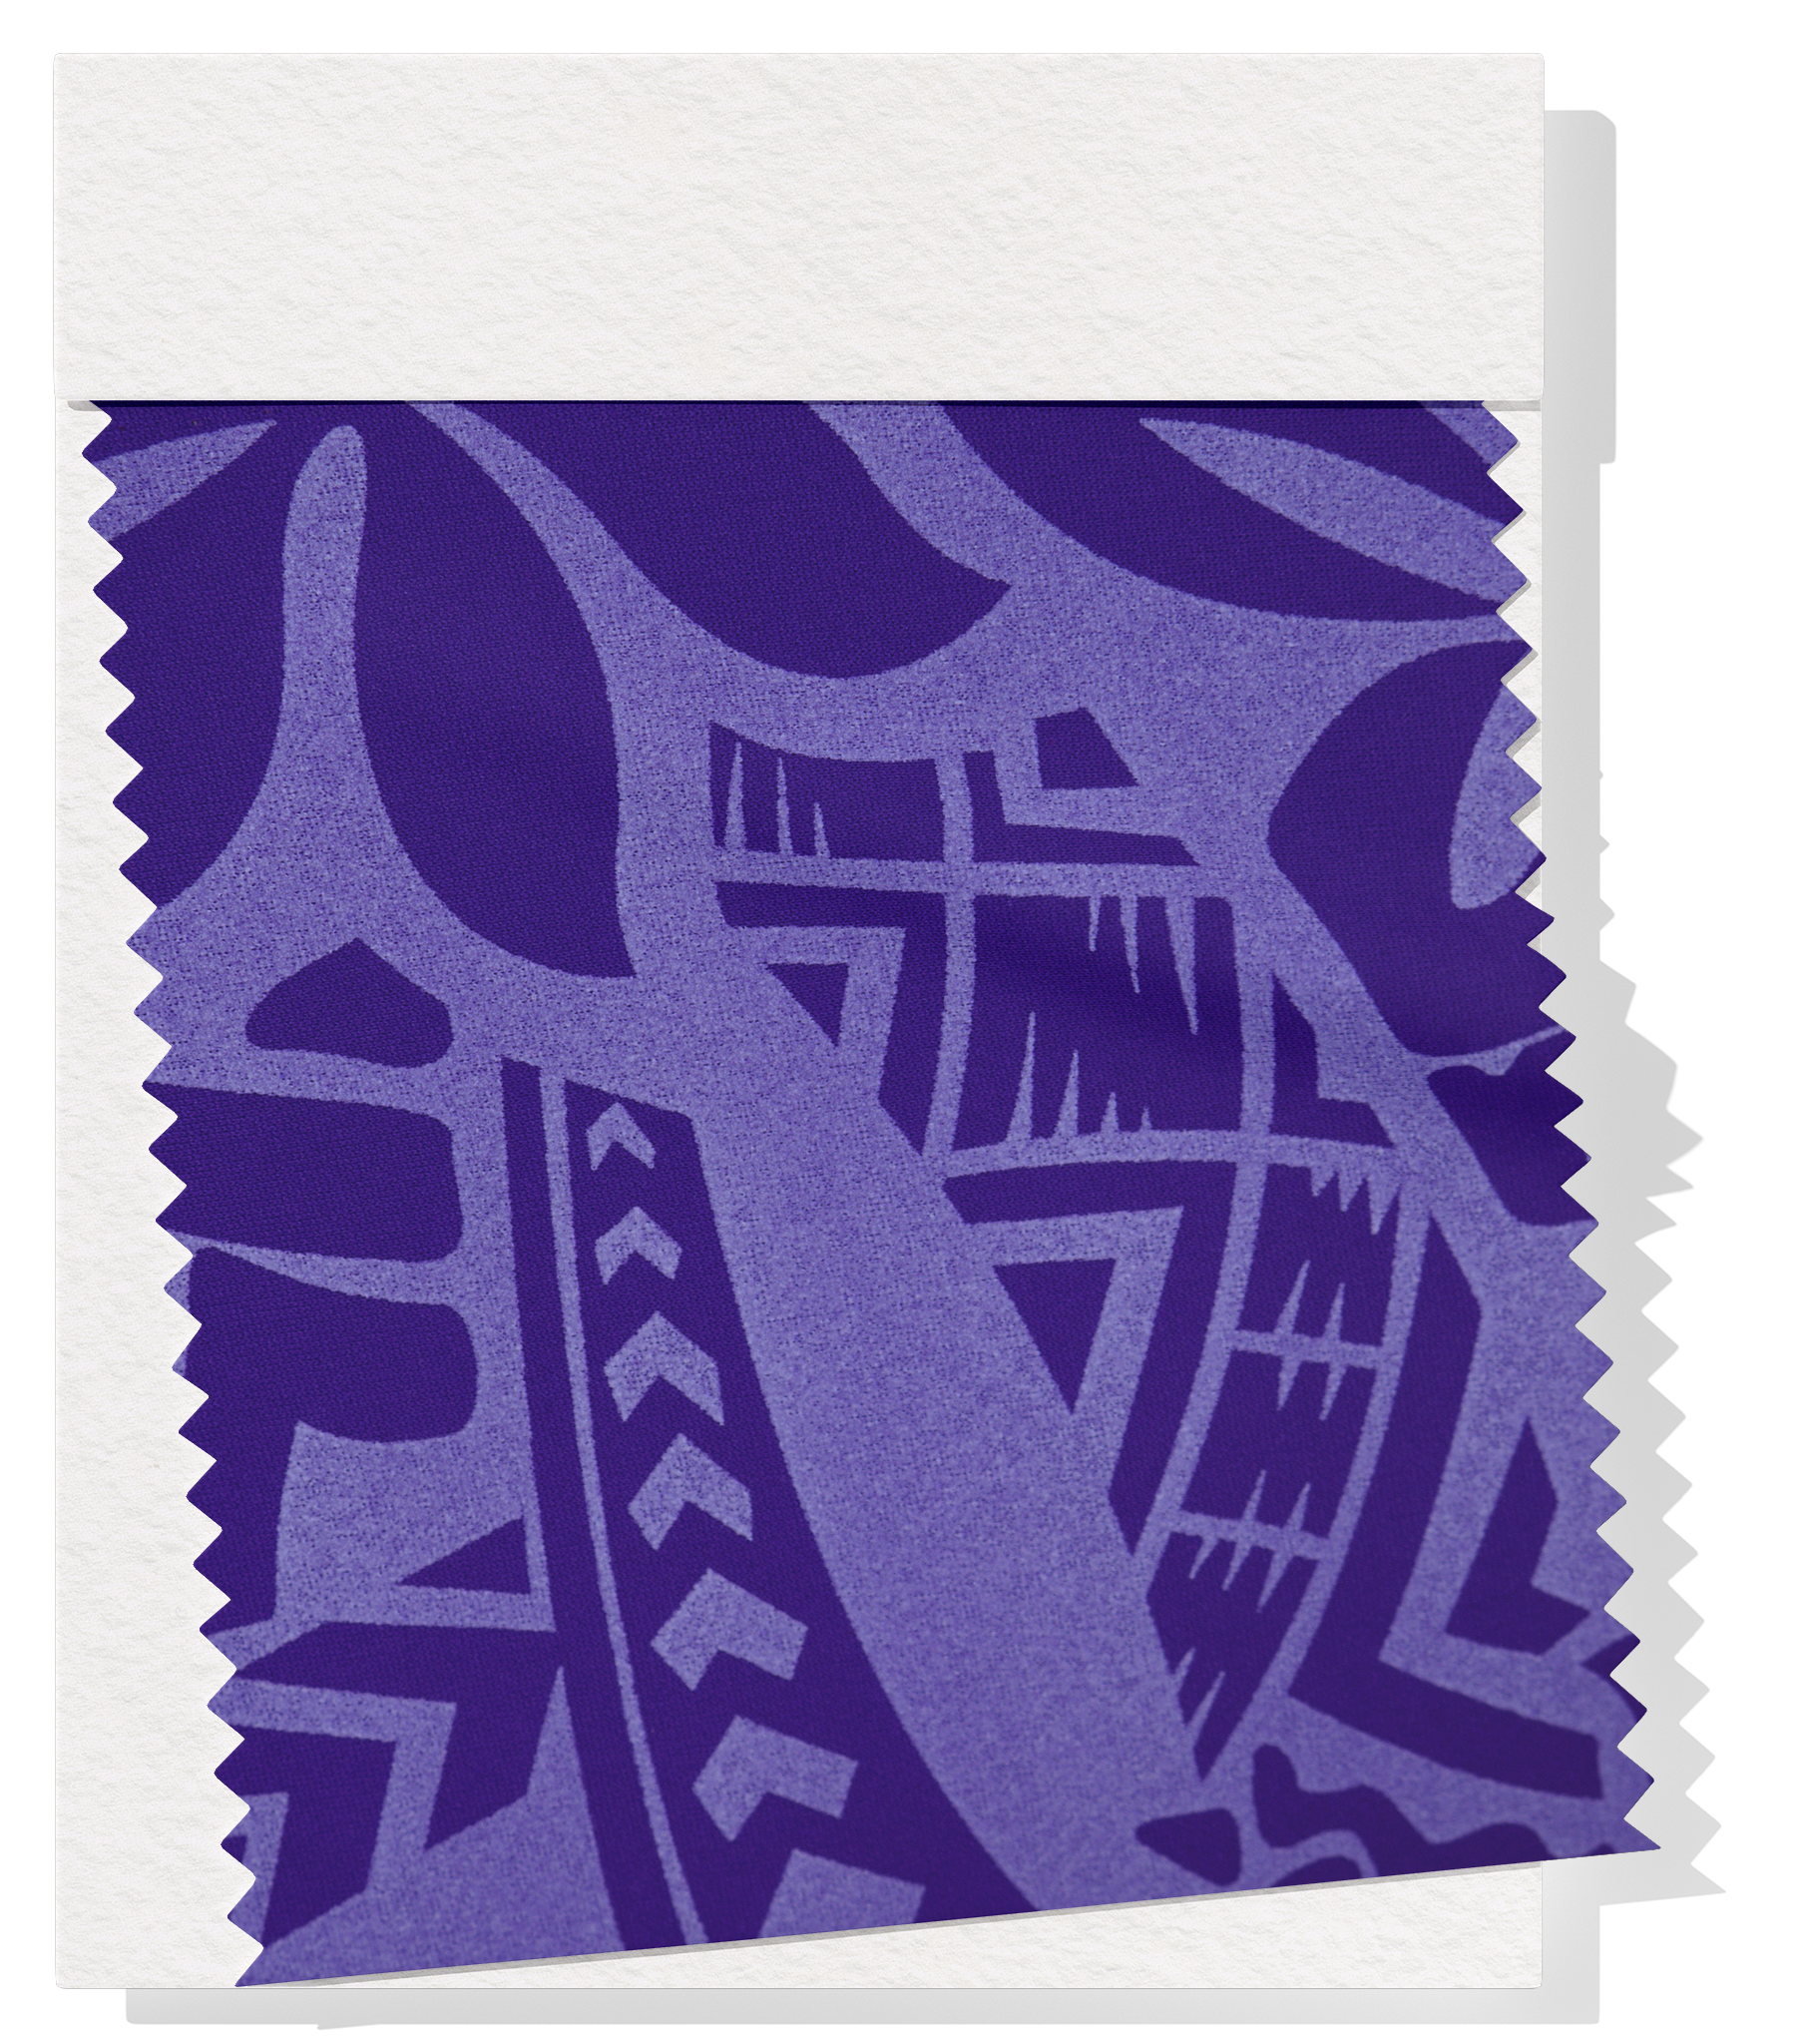 Stretch Polyester Pacific Print $12.00p/m Design #2 - Purple & White